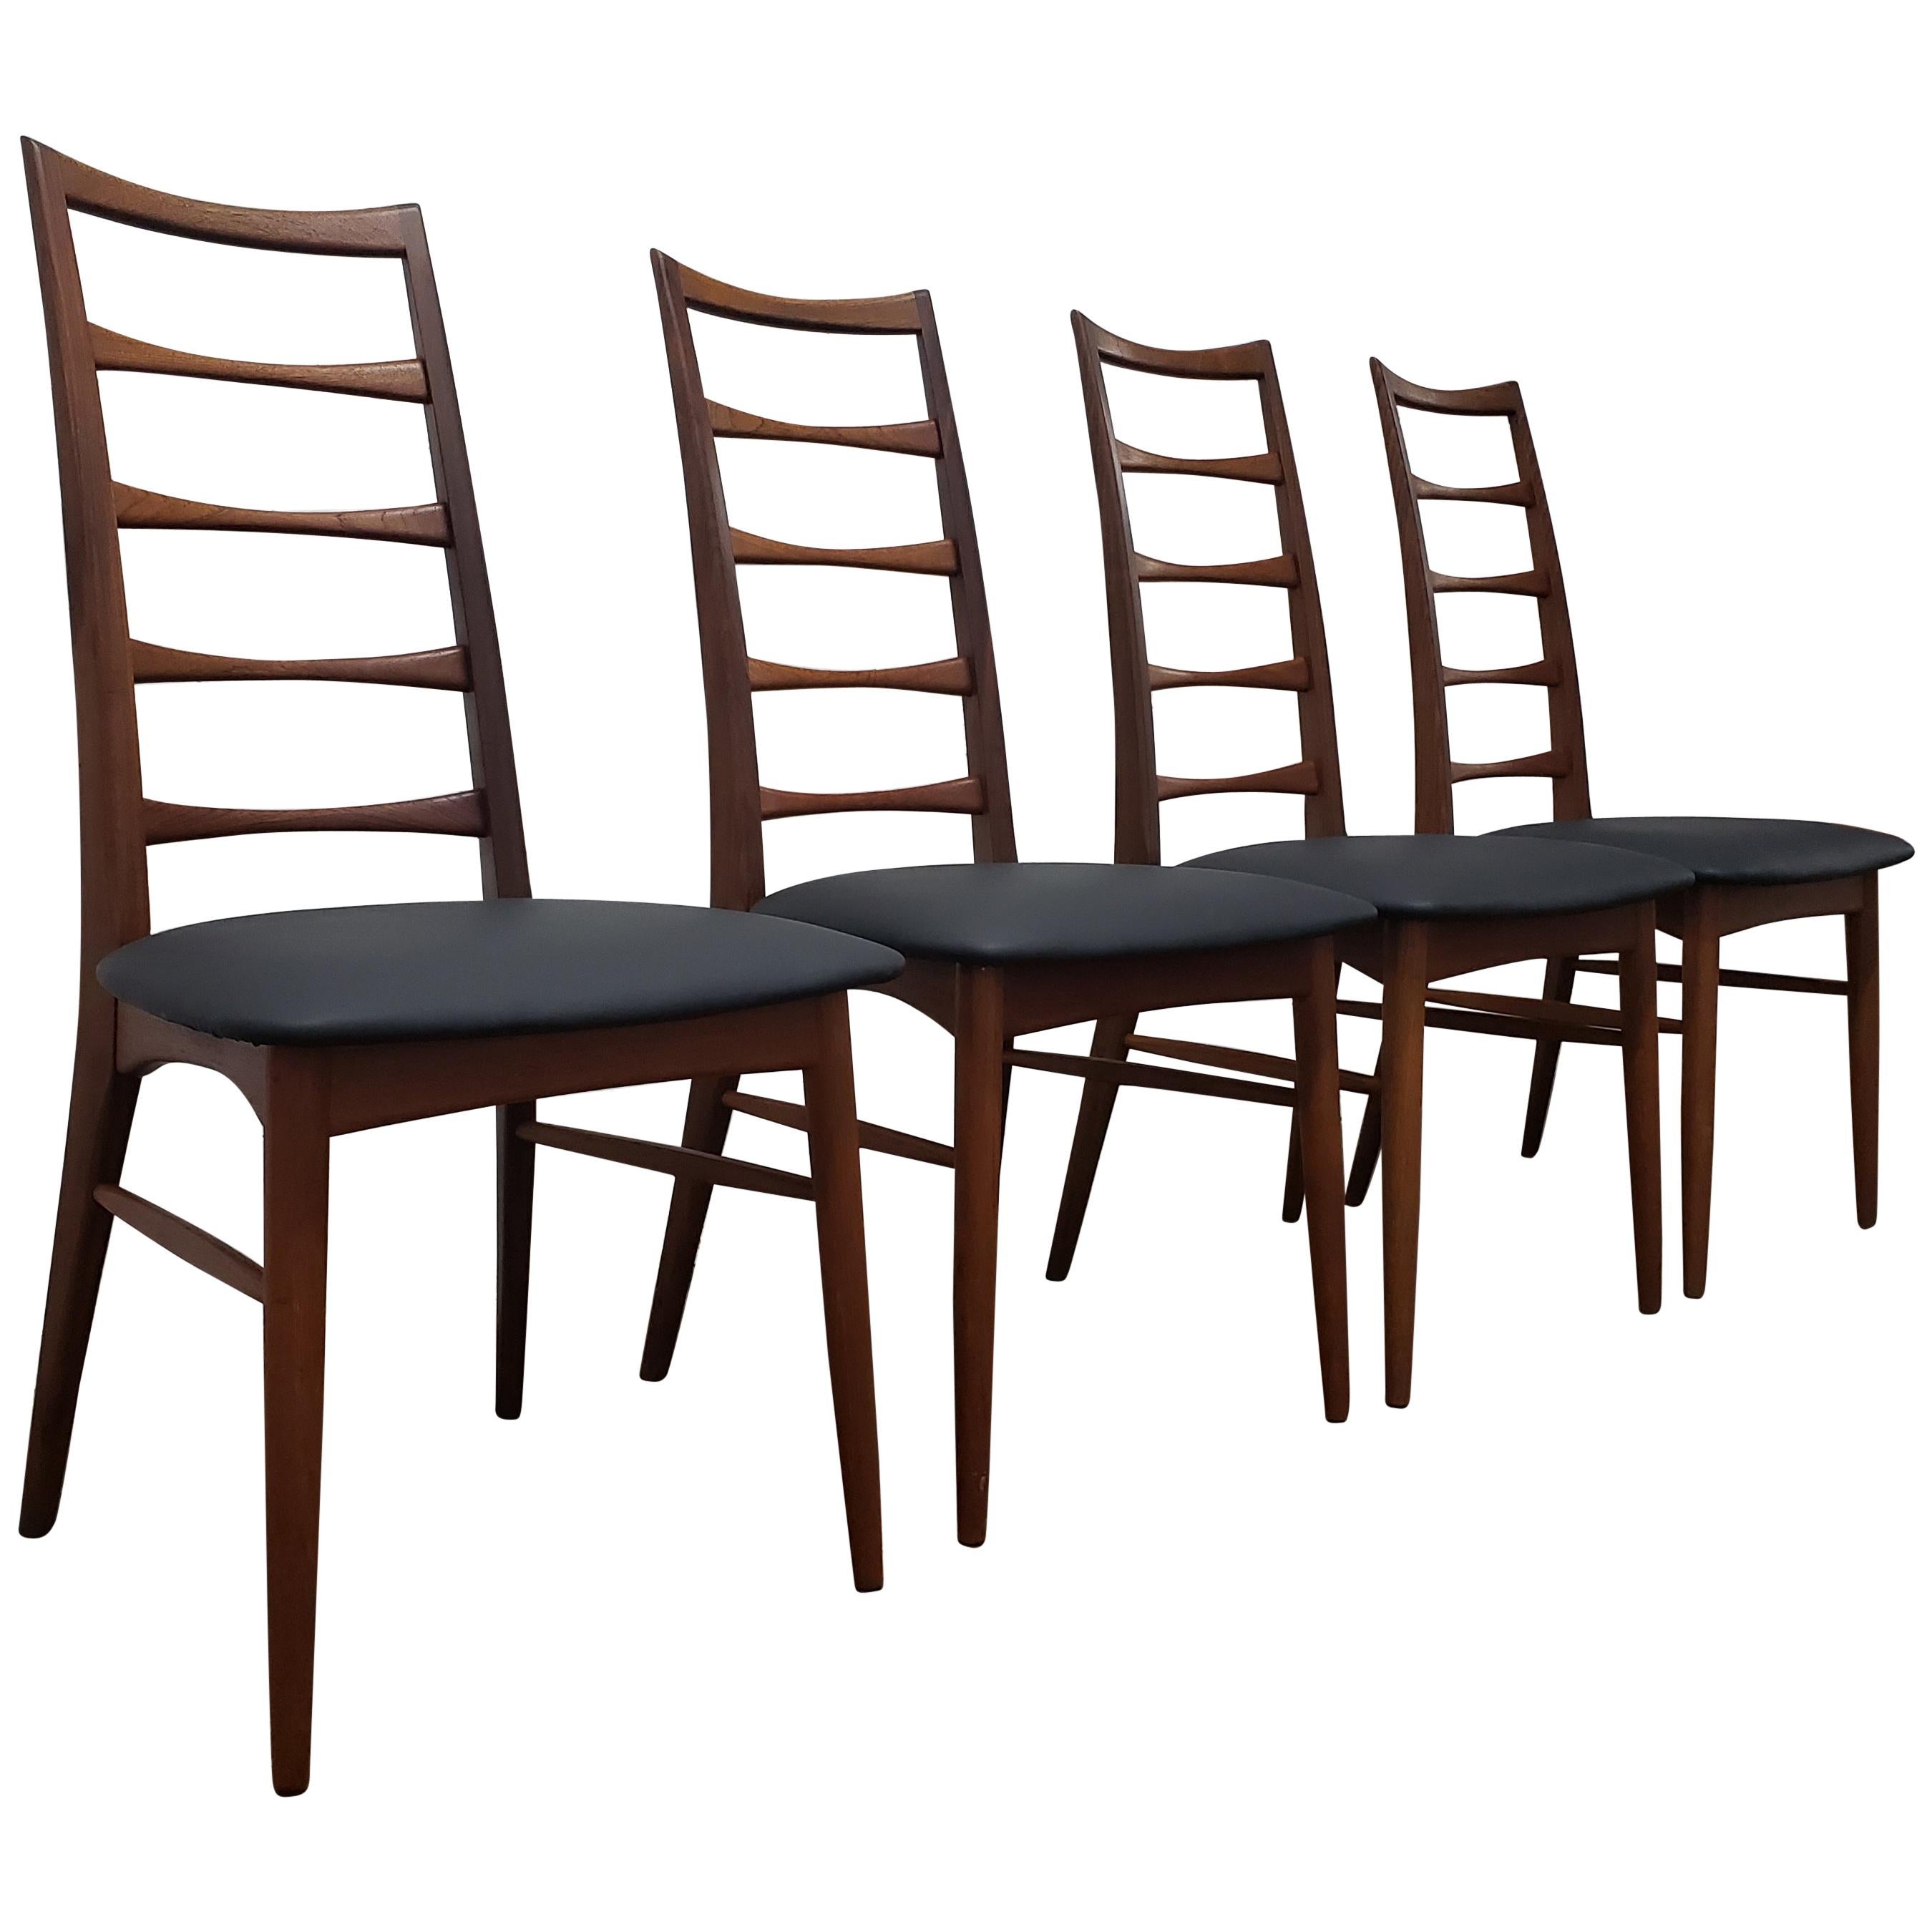 Set of Six Lis Dining Chair in Teak by Niels Koefoeds for Koefoeds Møbelfabrik